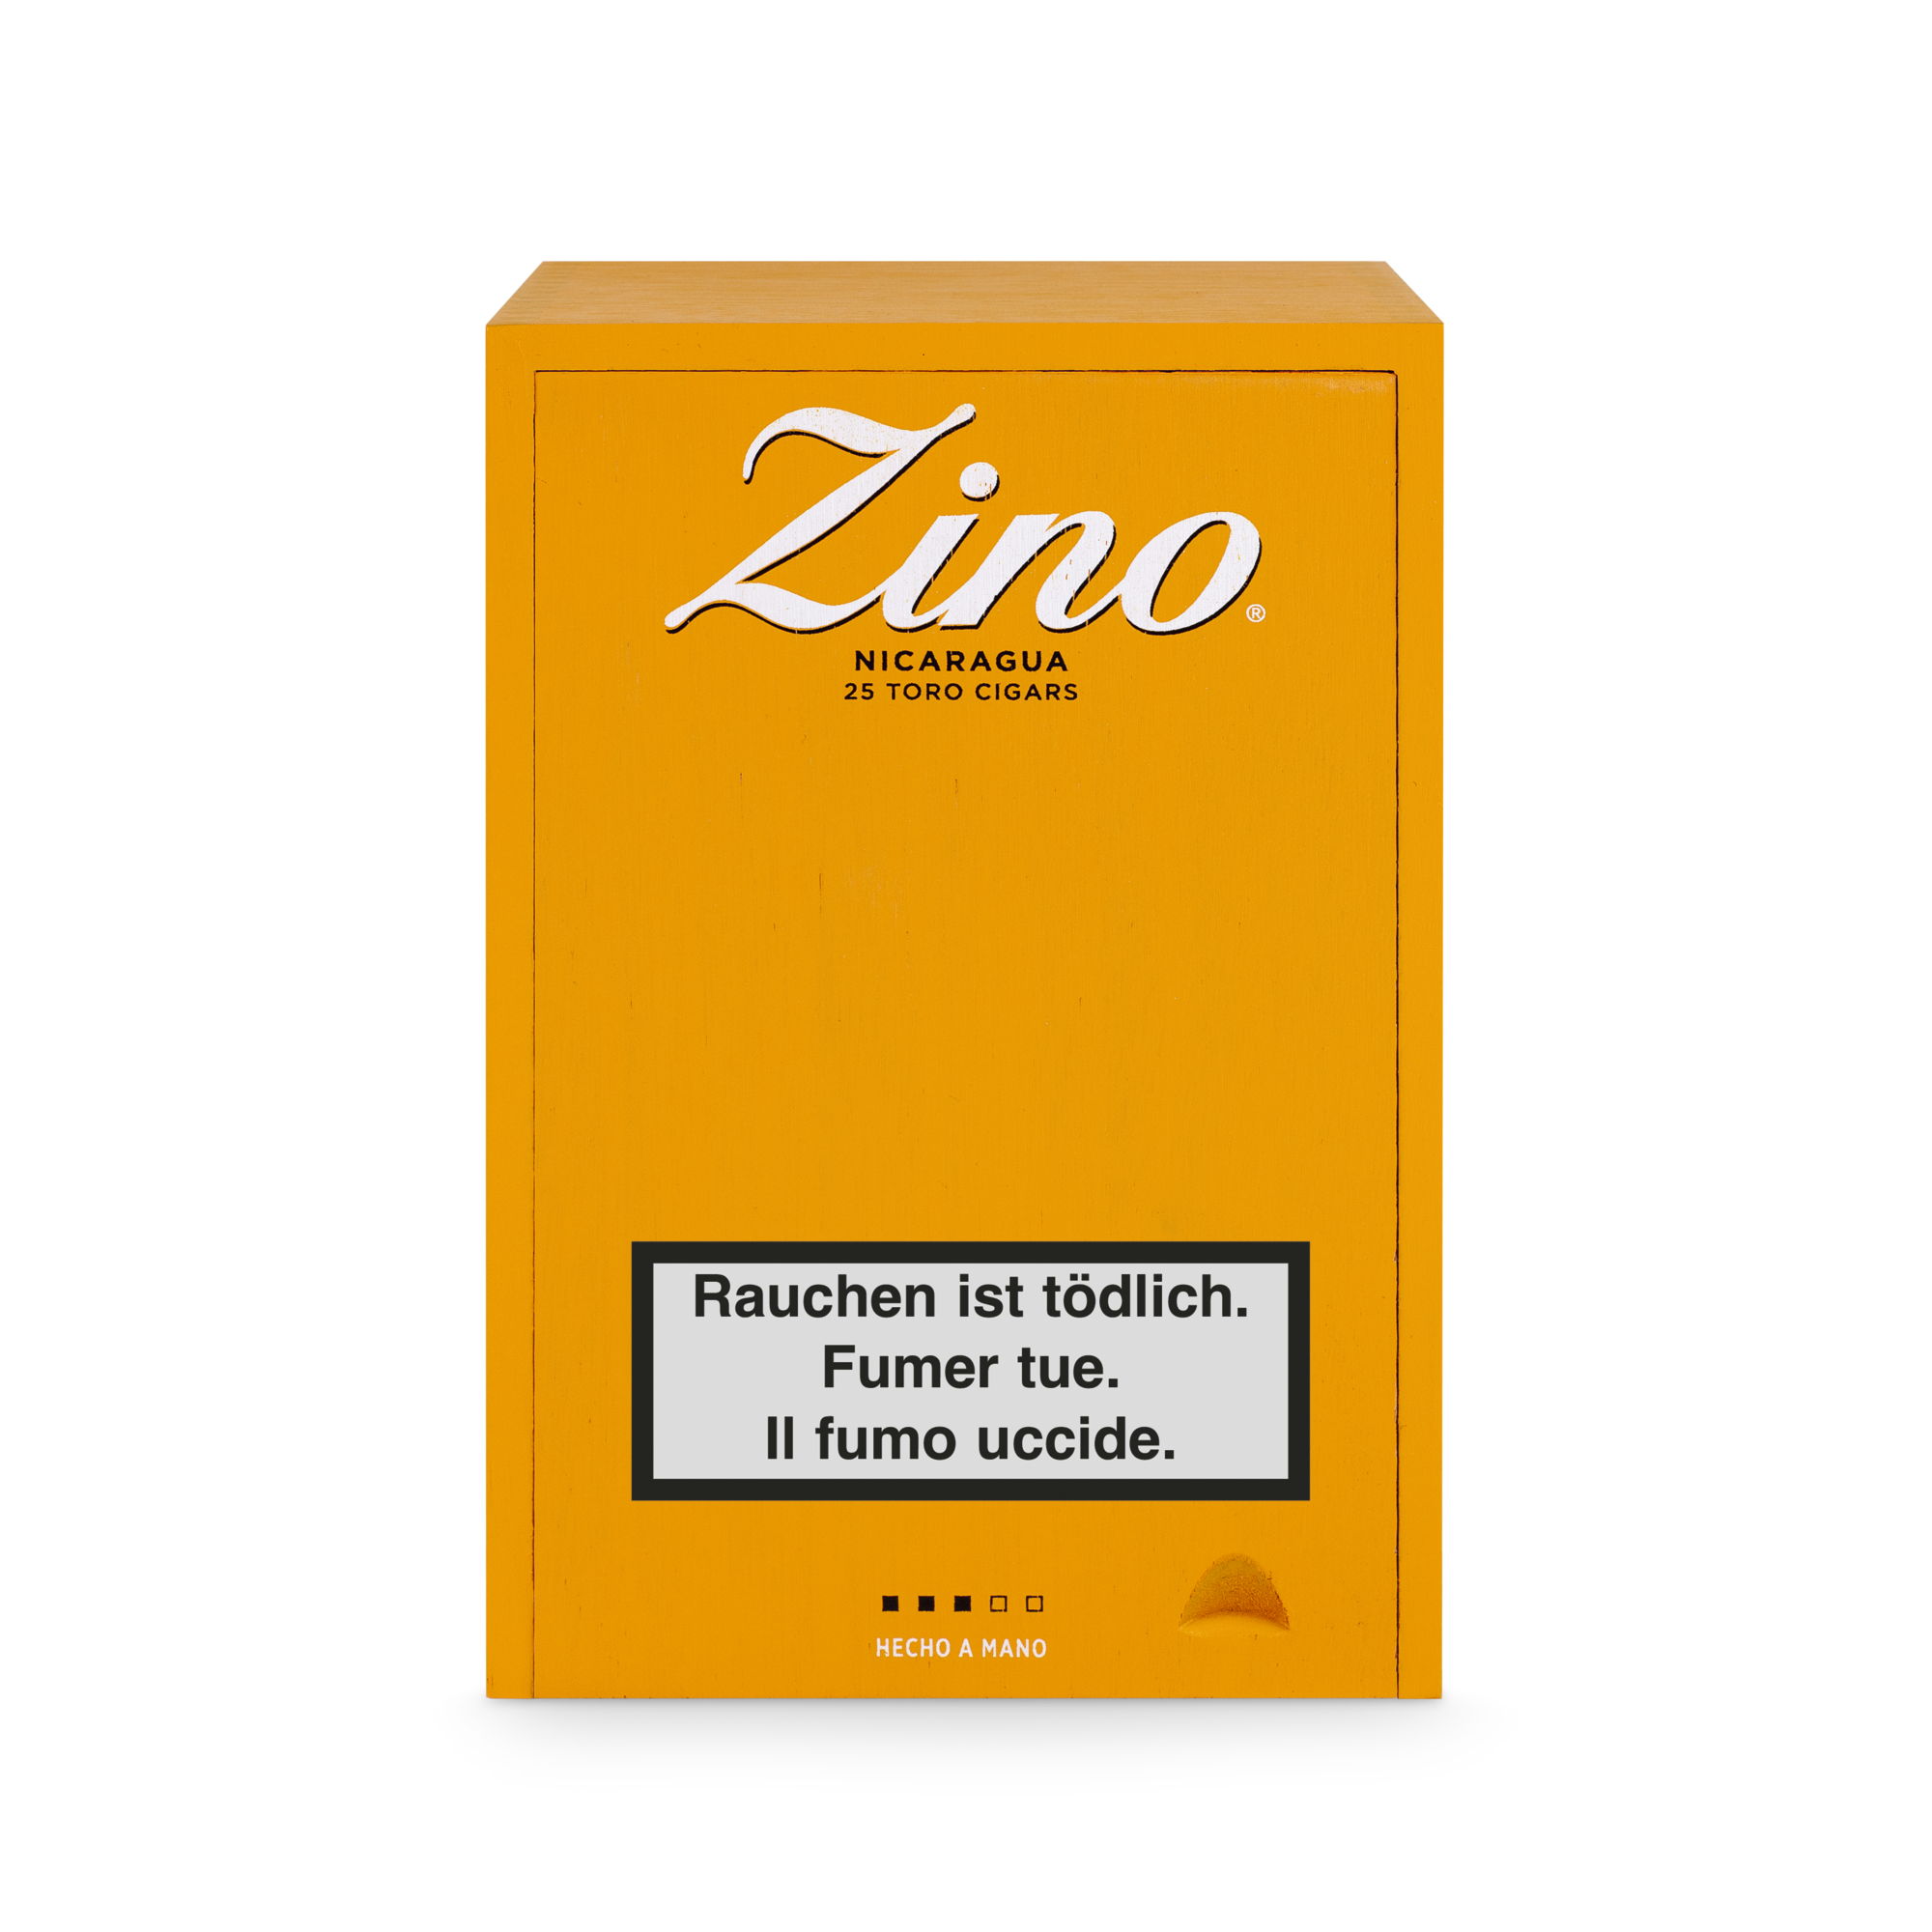 Zino Nicaragua Toro Zigarren 25er Box geschlossen von oben